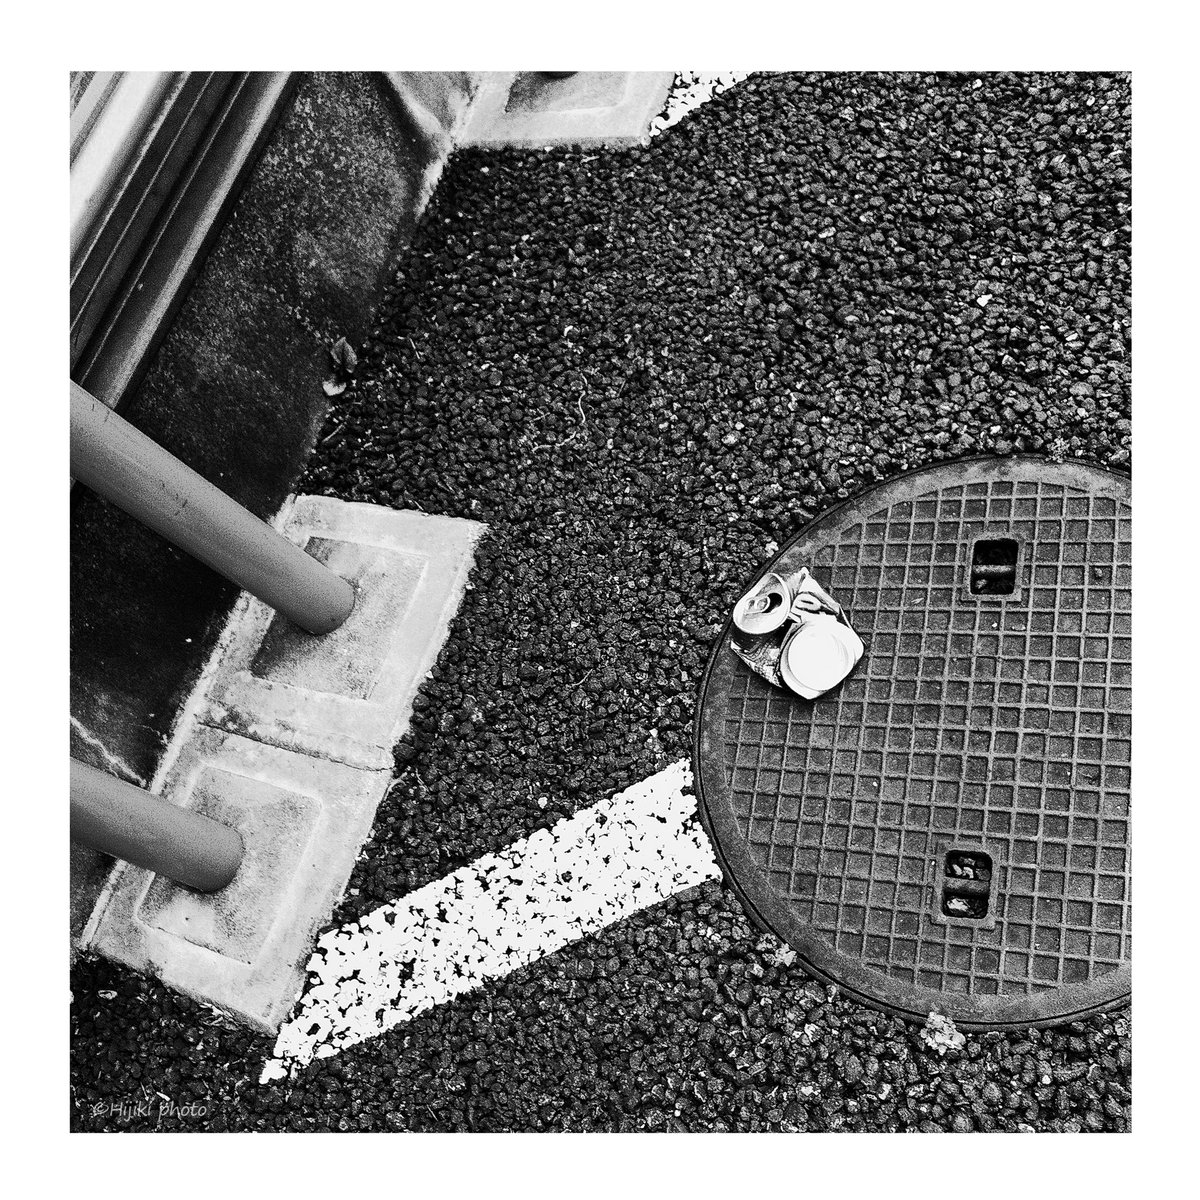 営み #ストリートスナップ #東京 #Tokyo #Japan #snapshot #BlackandWhite #bnwphotography #bnw #streetshots #monochrome #fineartphotography #streetphotography #blackandwhitephotography #塵芥